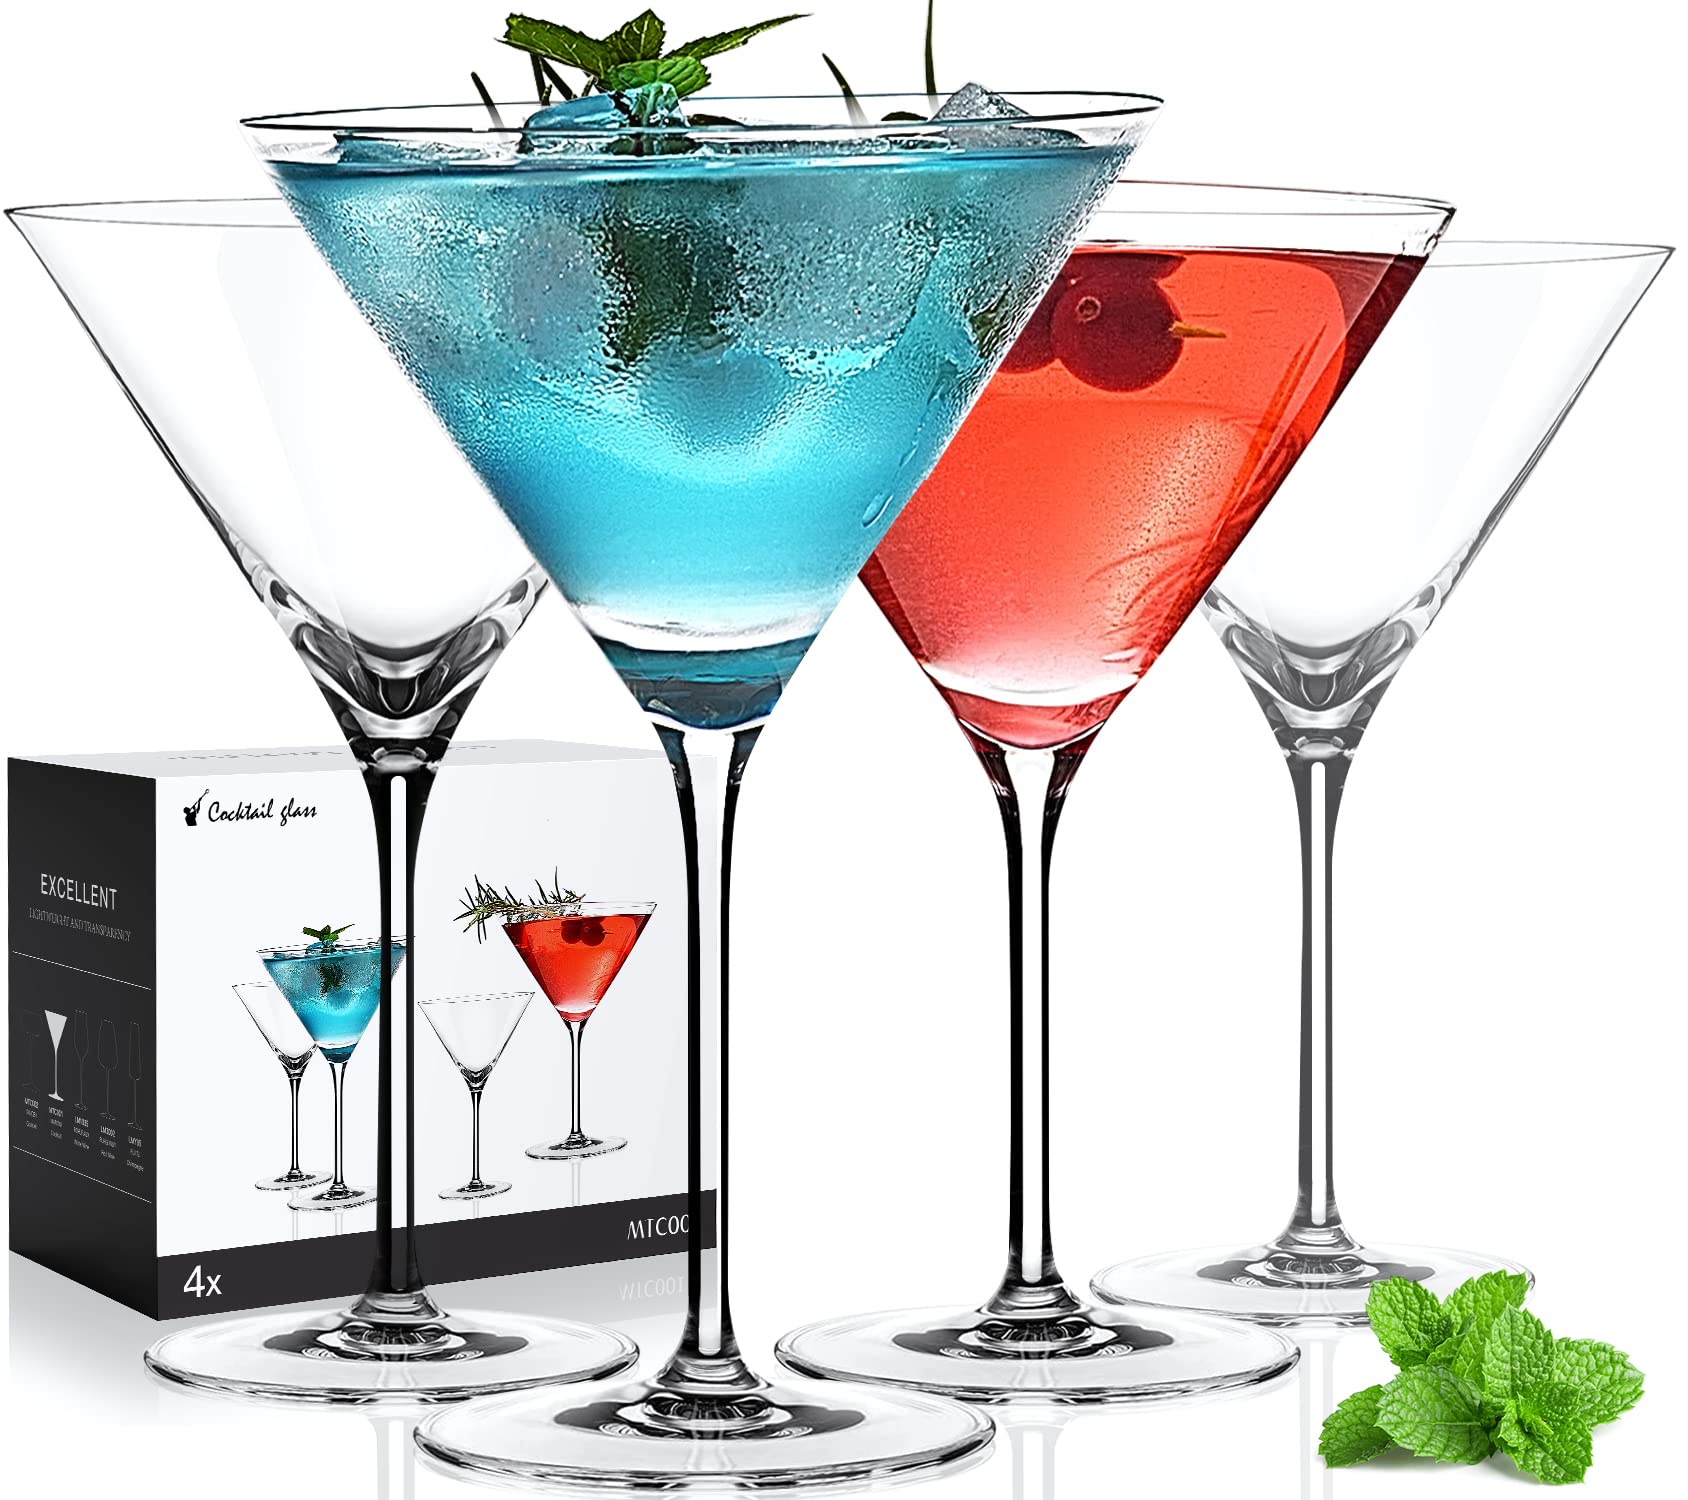 LUNA & MANTHA Martini Glasses | Set of 4 | 10oz | Hand-Blown Crystal Large Martini Glass Set | Elegant Cocktail Glasses for Bar,